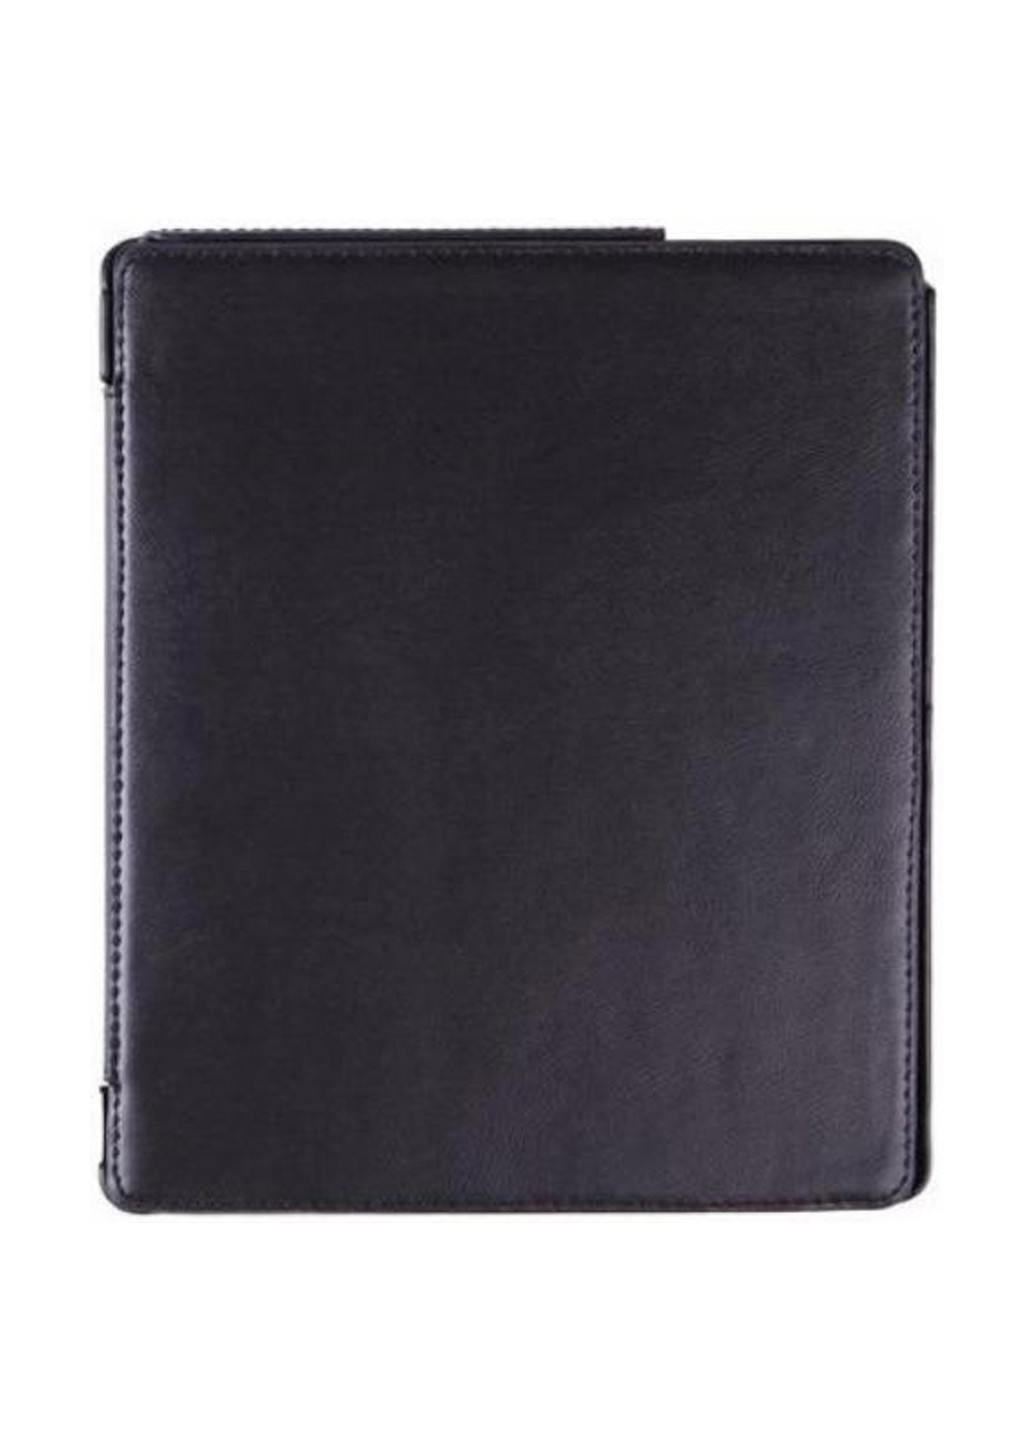 Чохол Premium для PocketBook 840 black (4821784622003) Airon premium для электронной книги pocketbook 840 black (4821784622003) (158554732)